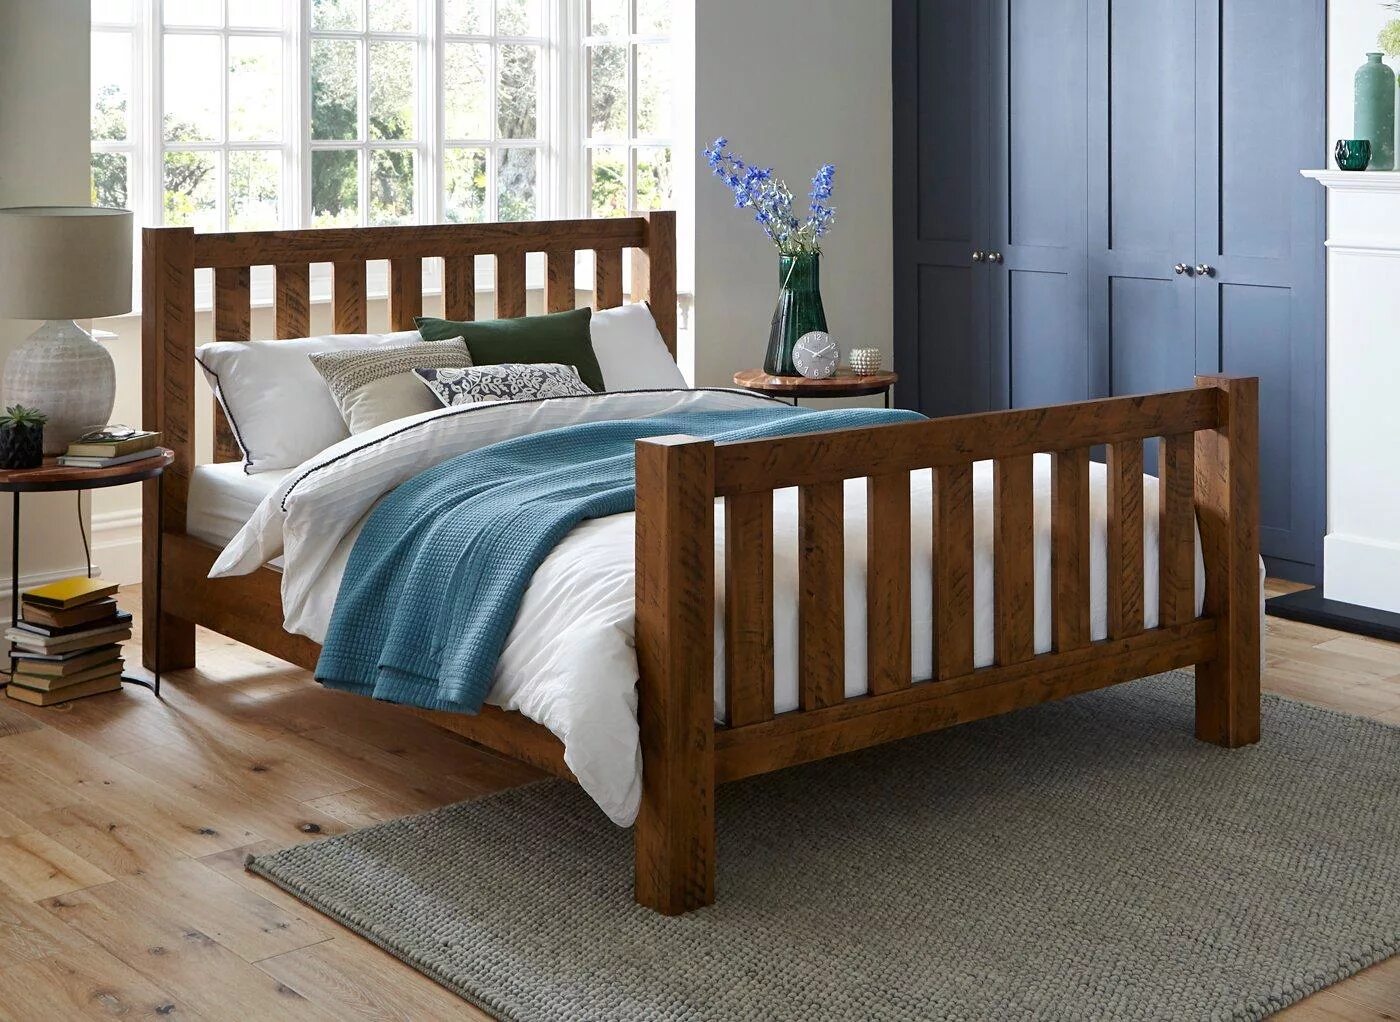 Скрип деревянных кроватей. Кровать подростковая «Wooden Bed-2». Кровать дерево текстиль. Деревянная кровать в скандинавском стиле. Кровати в скандинавском стиле с деревянным каркасом.